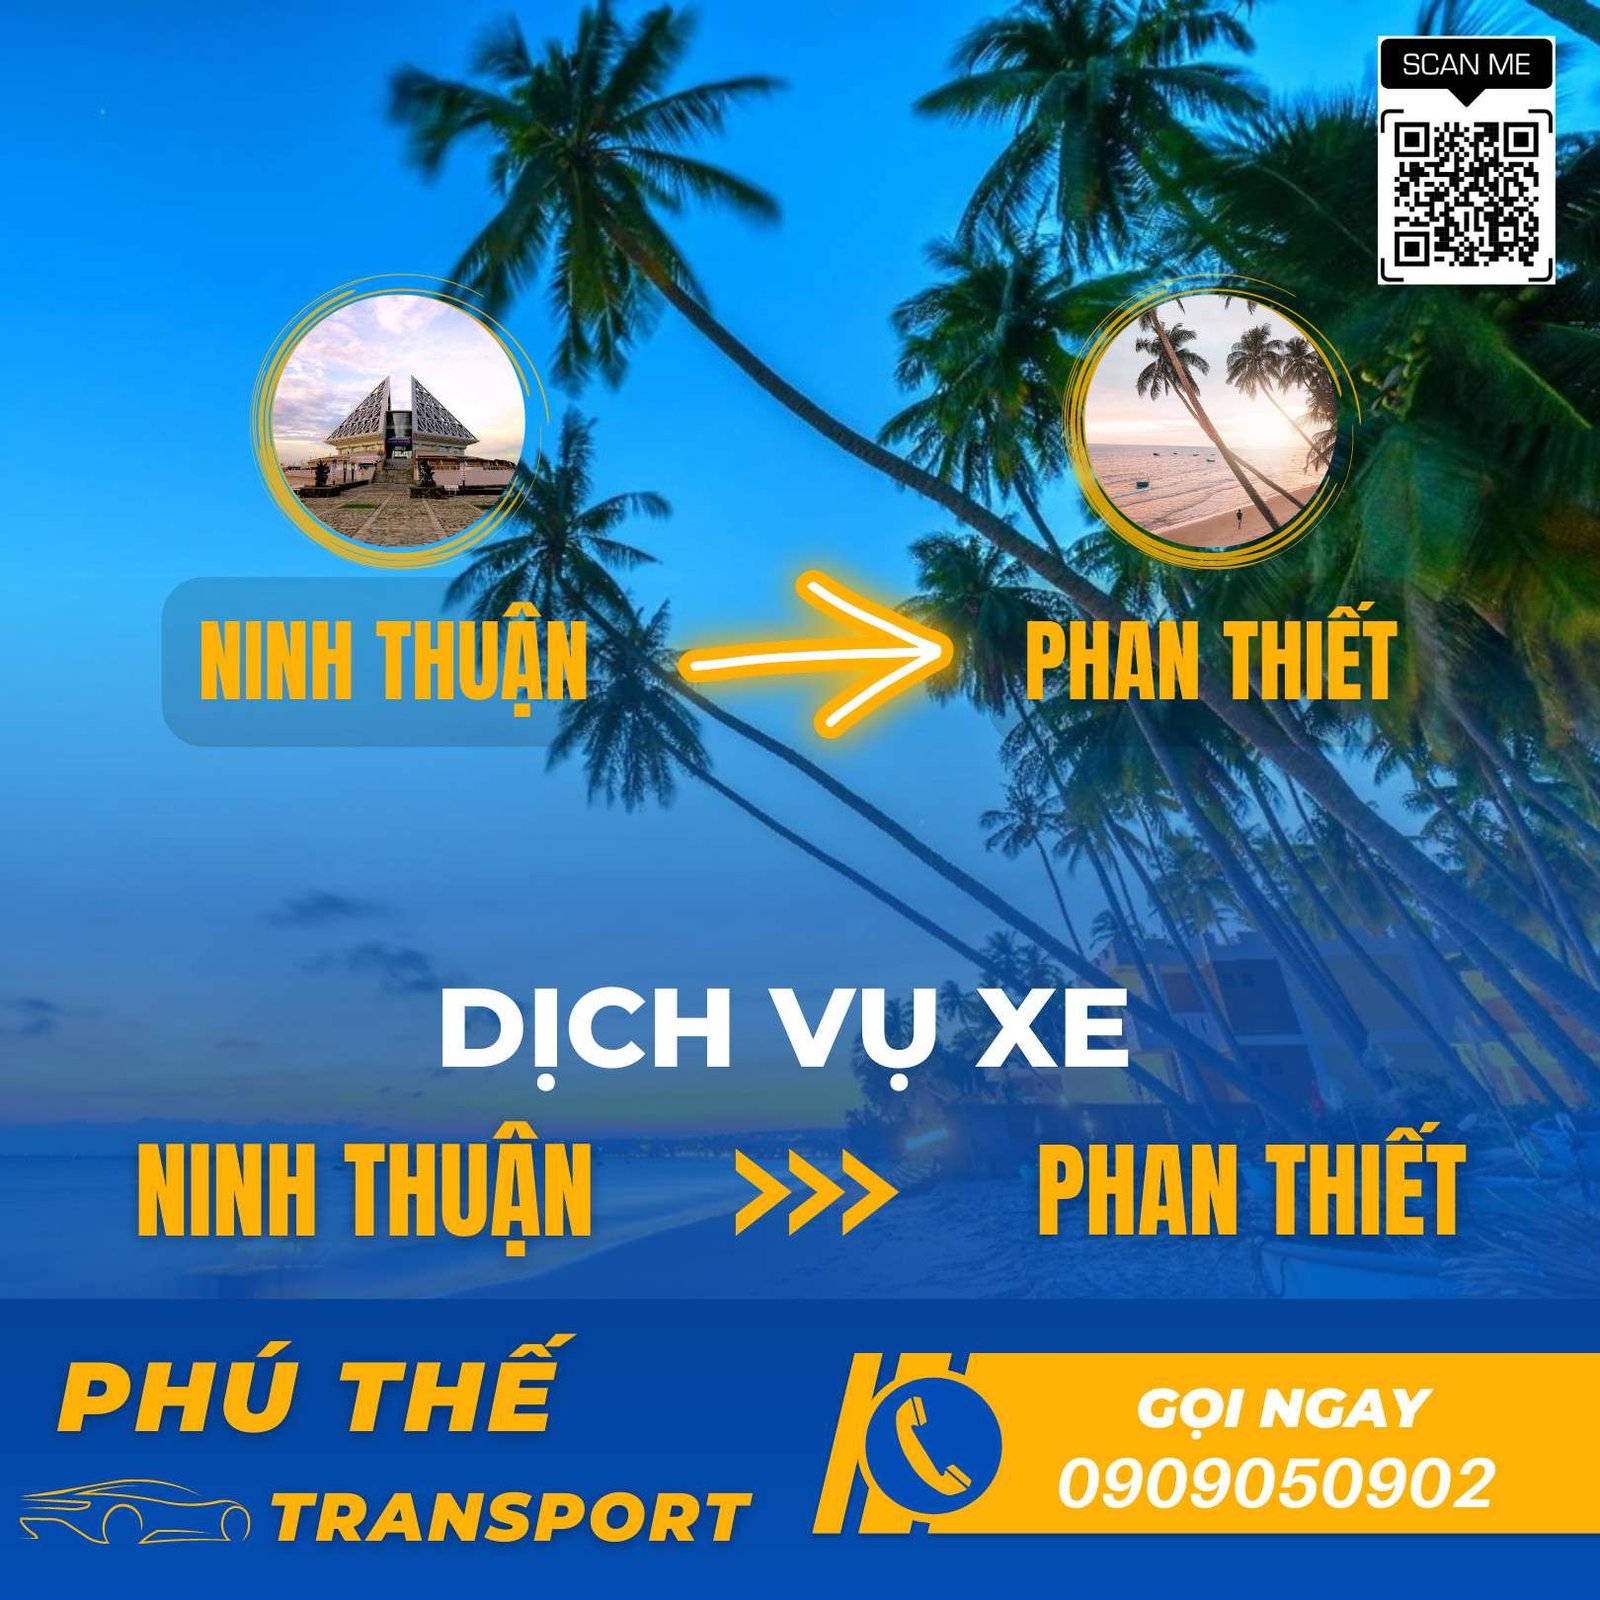 Đặt thuê xe Ninh Thuận đi Phan Thiết giá rẻ chất lượng nhất